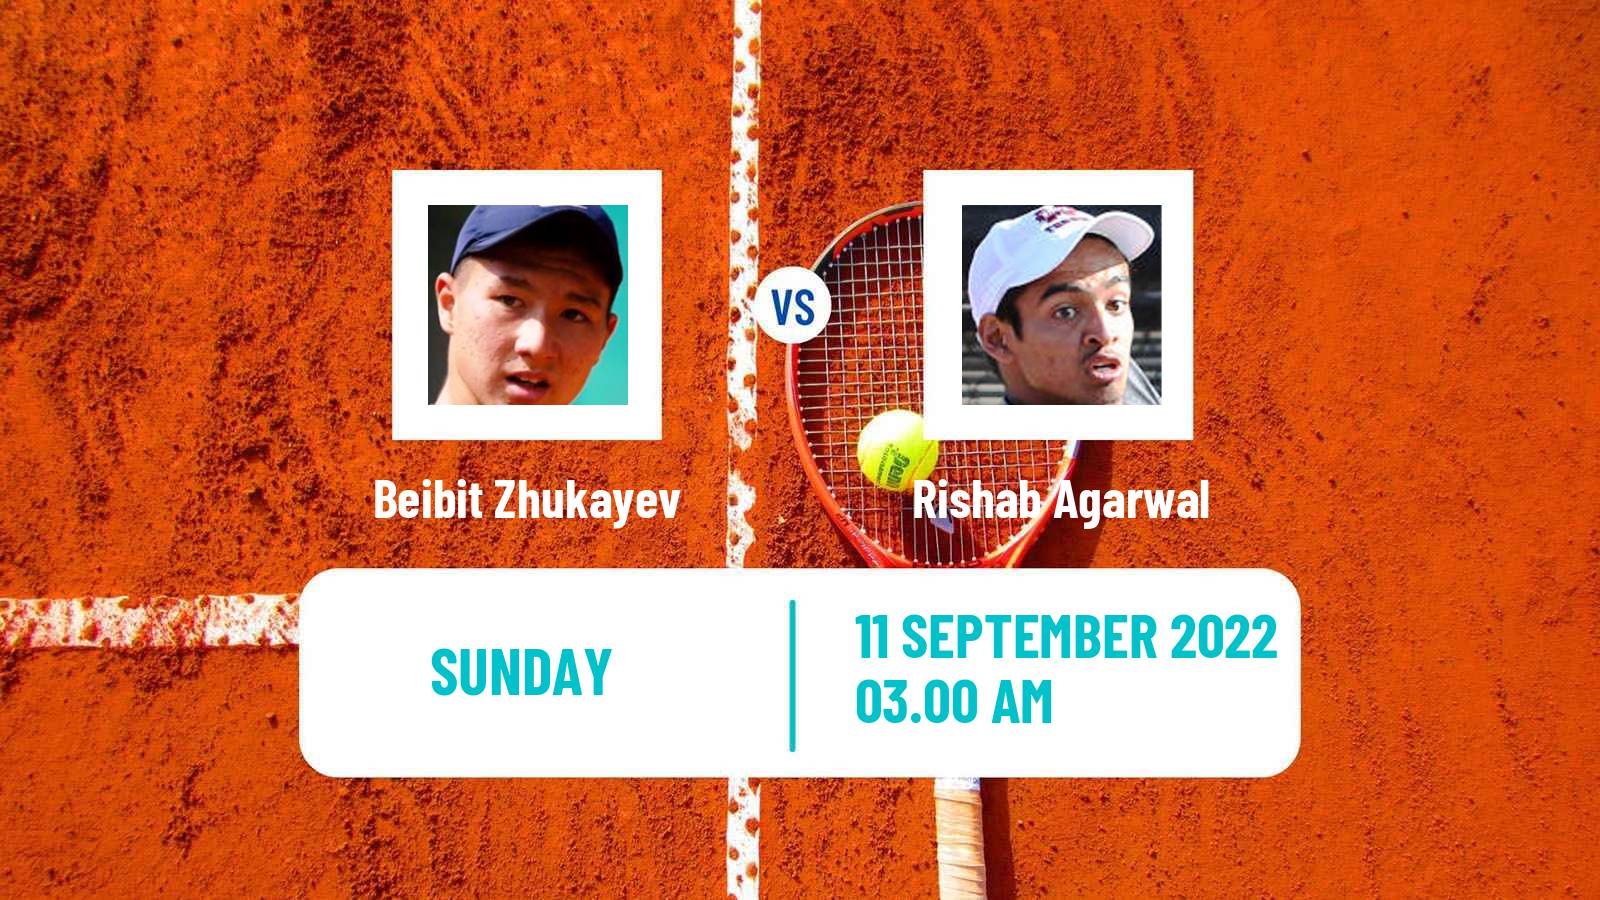 Tennis ATP Challenger Beibit Zhukayev - Rishab Agarwal